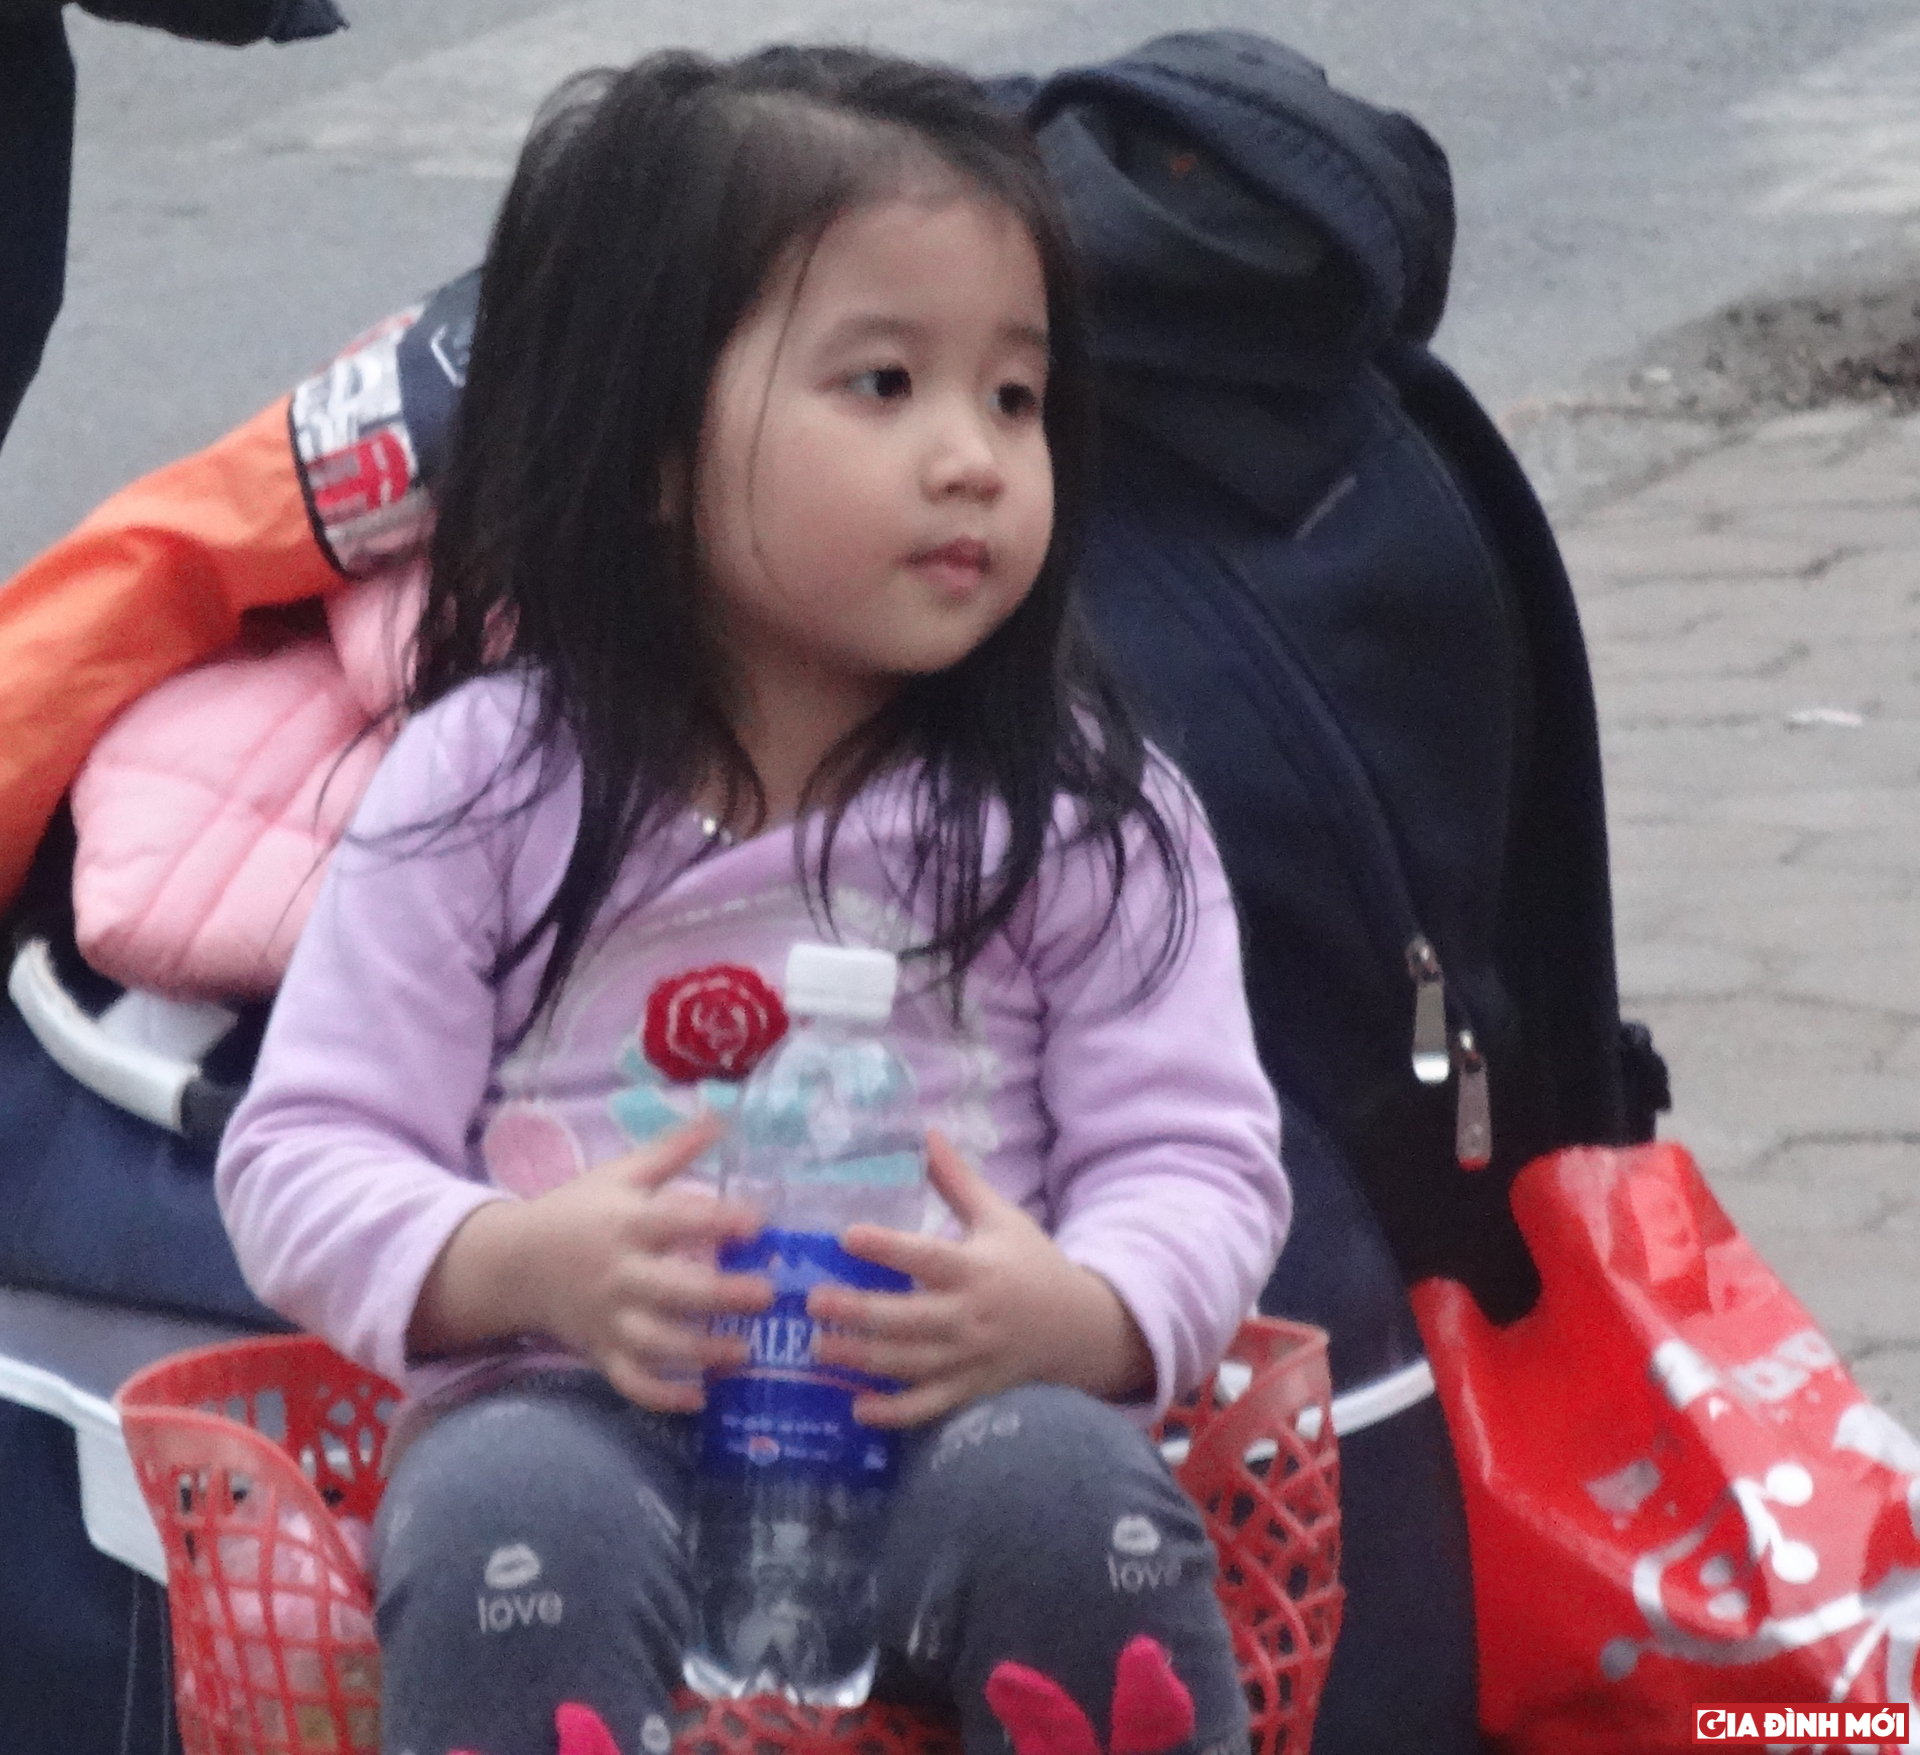 Kết thúc nghỉ lễ, nhiều gia đình trở lại Hà Nội bắt đầu công việc cũng là lúc nhiều trẻ nhỏ theo cha mẹ về Thủ đô.